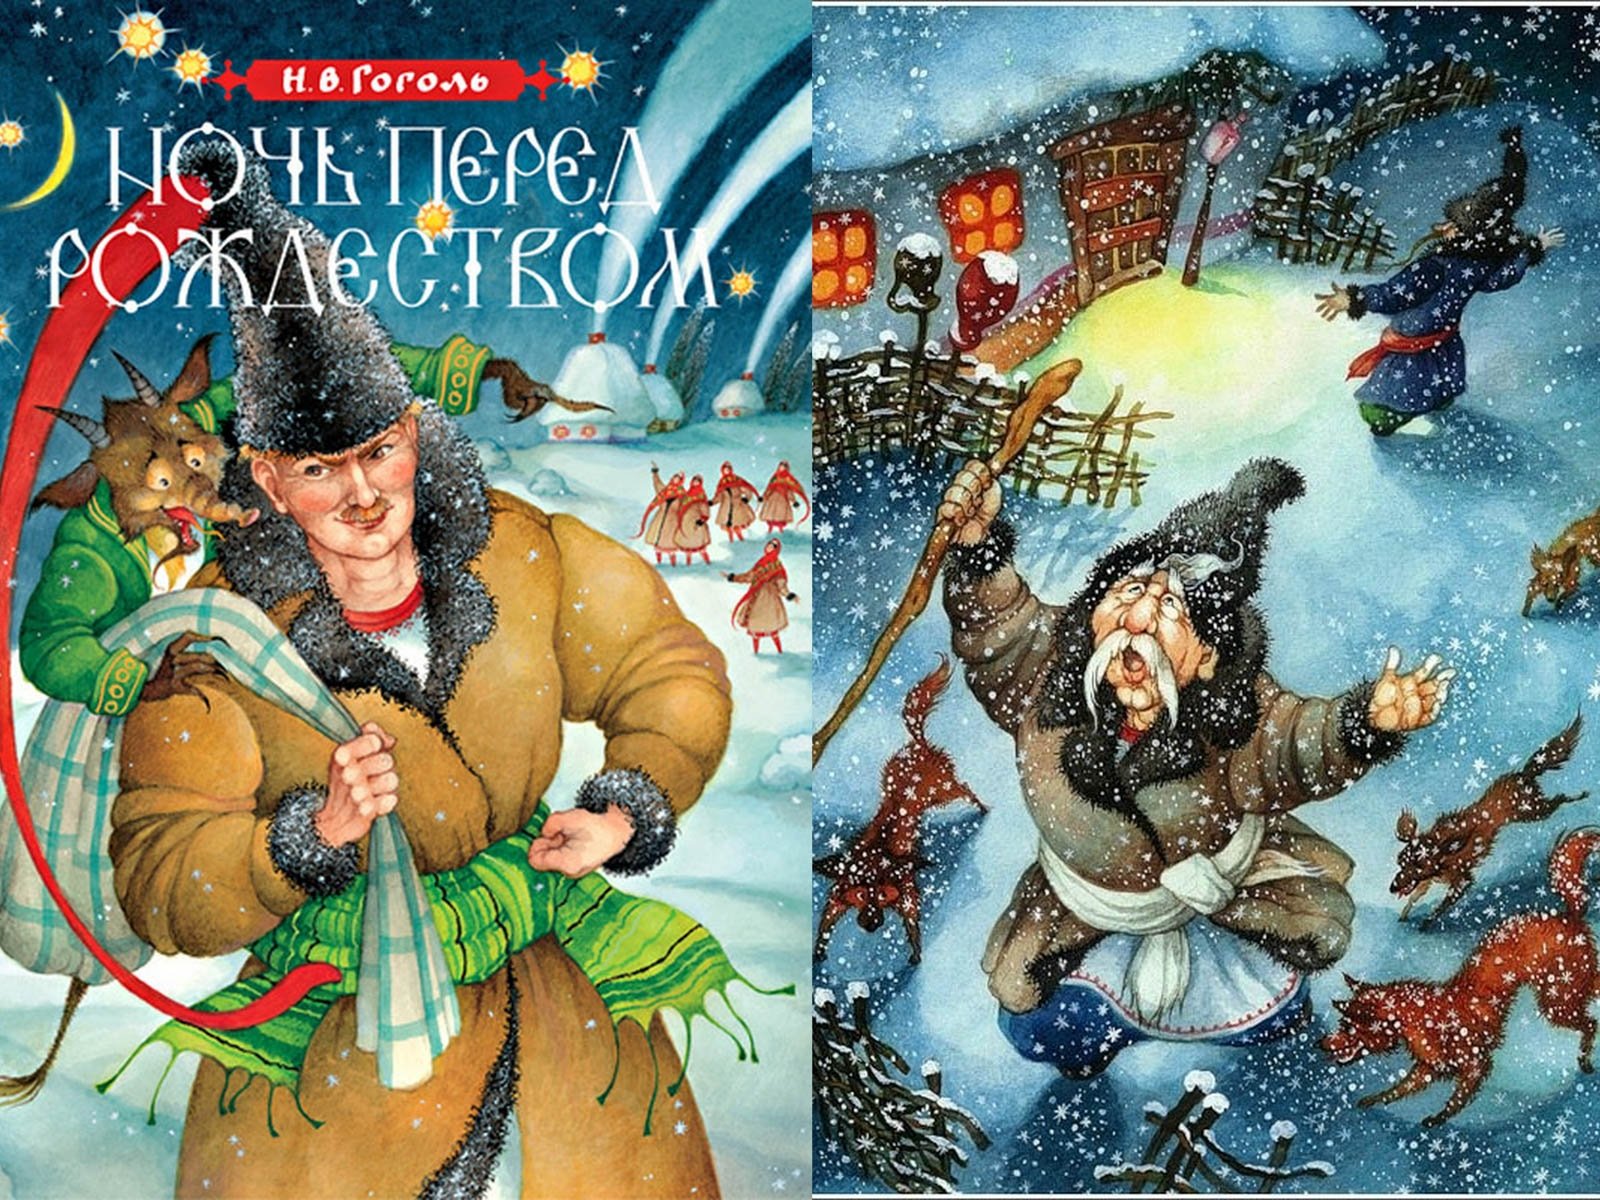 Фрагмент из произведения гоголя. Н В Гоголь ночь перед Рождеством. Иллюстрации к книге Гоголя ночь перед Рождеством. Иллюстрацию к произведению н.в.Гоголя "ночь перед Рождеством".